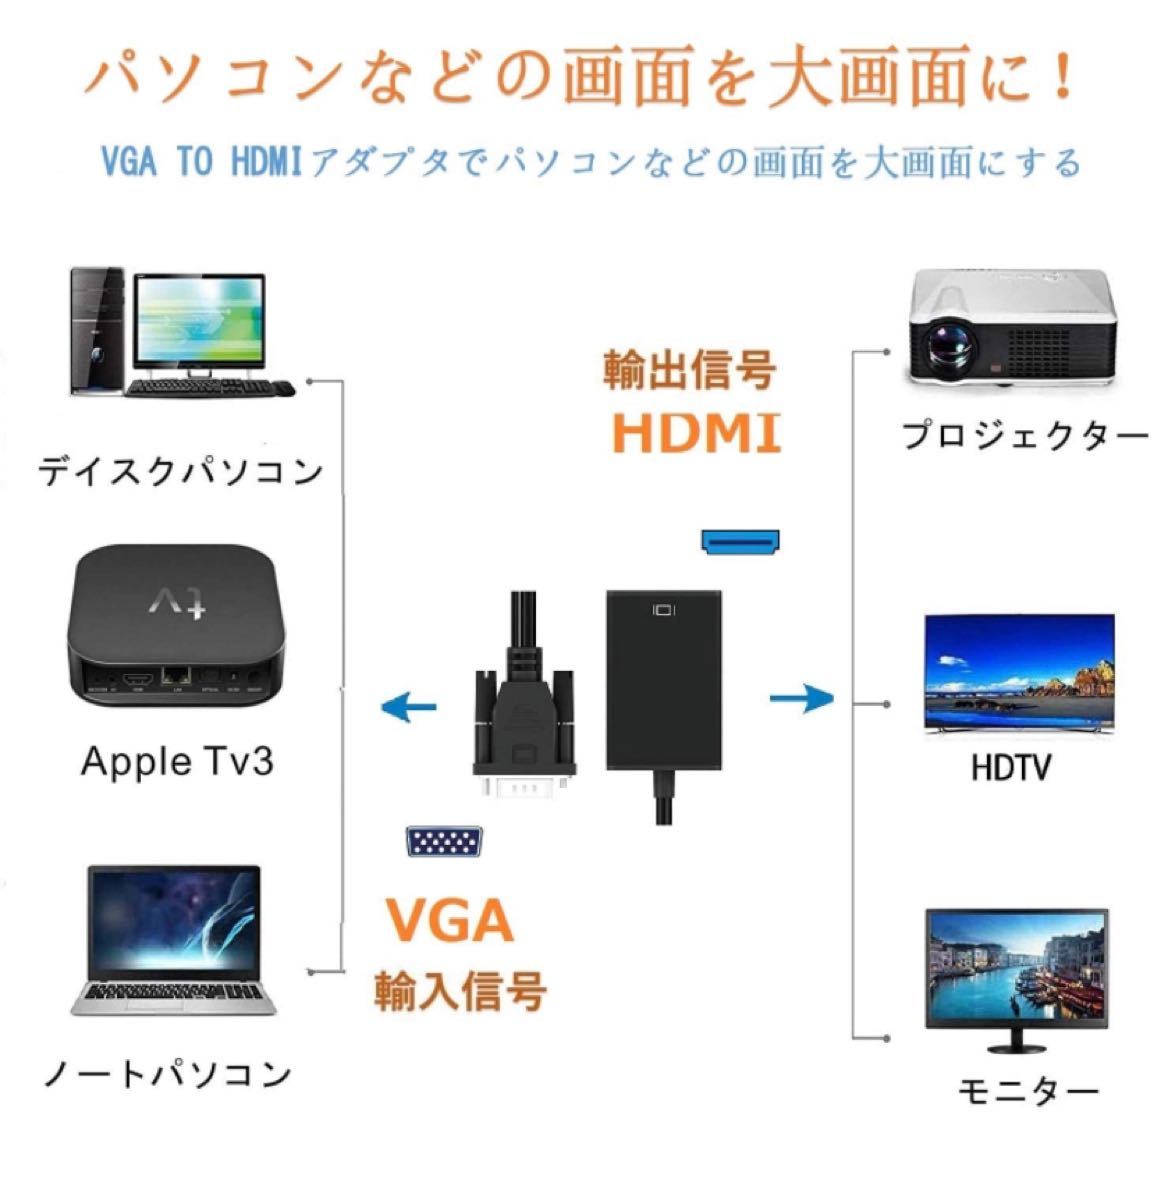 VGA HDMI 変換アダプタ VGA HDMI ケーブル VGA to HDMI 変換ケーブル VGA HDMI 新品・未使用